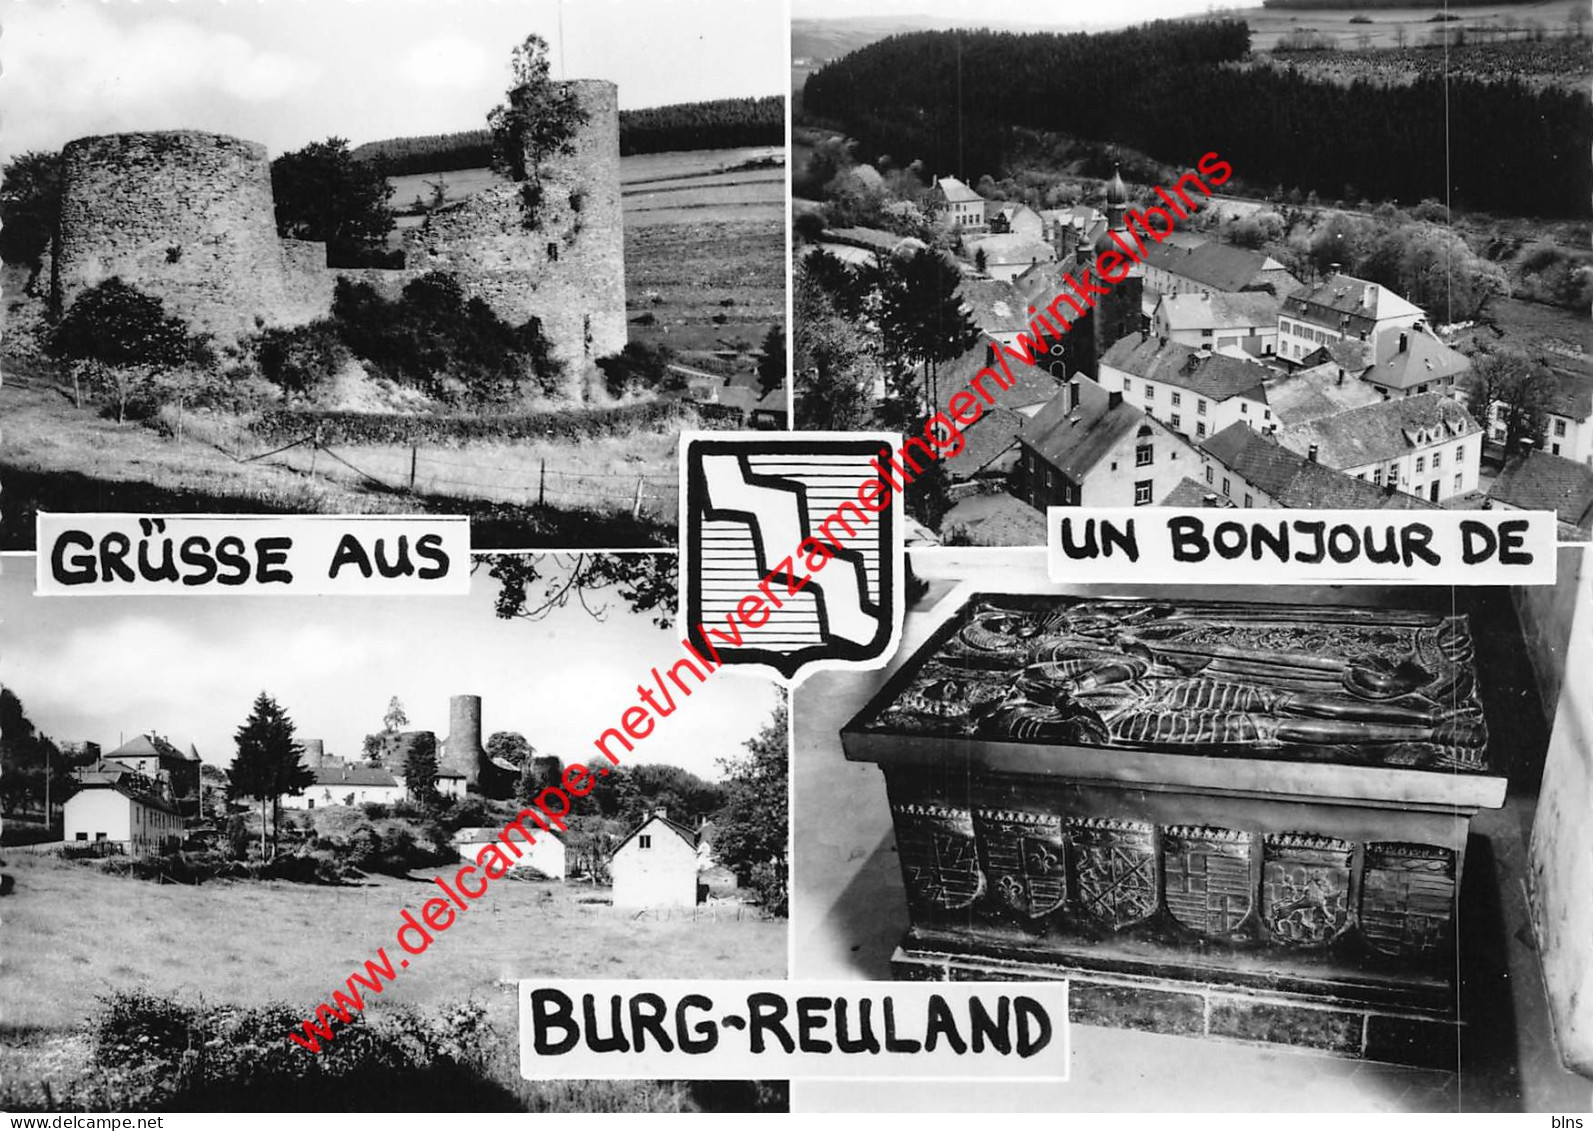 Grüsse Aus - Burg-Reuland - Burg-Reuland